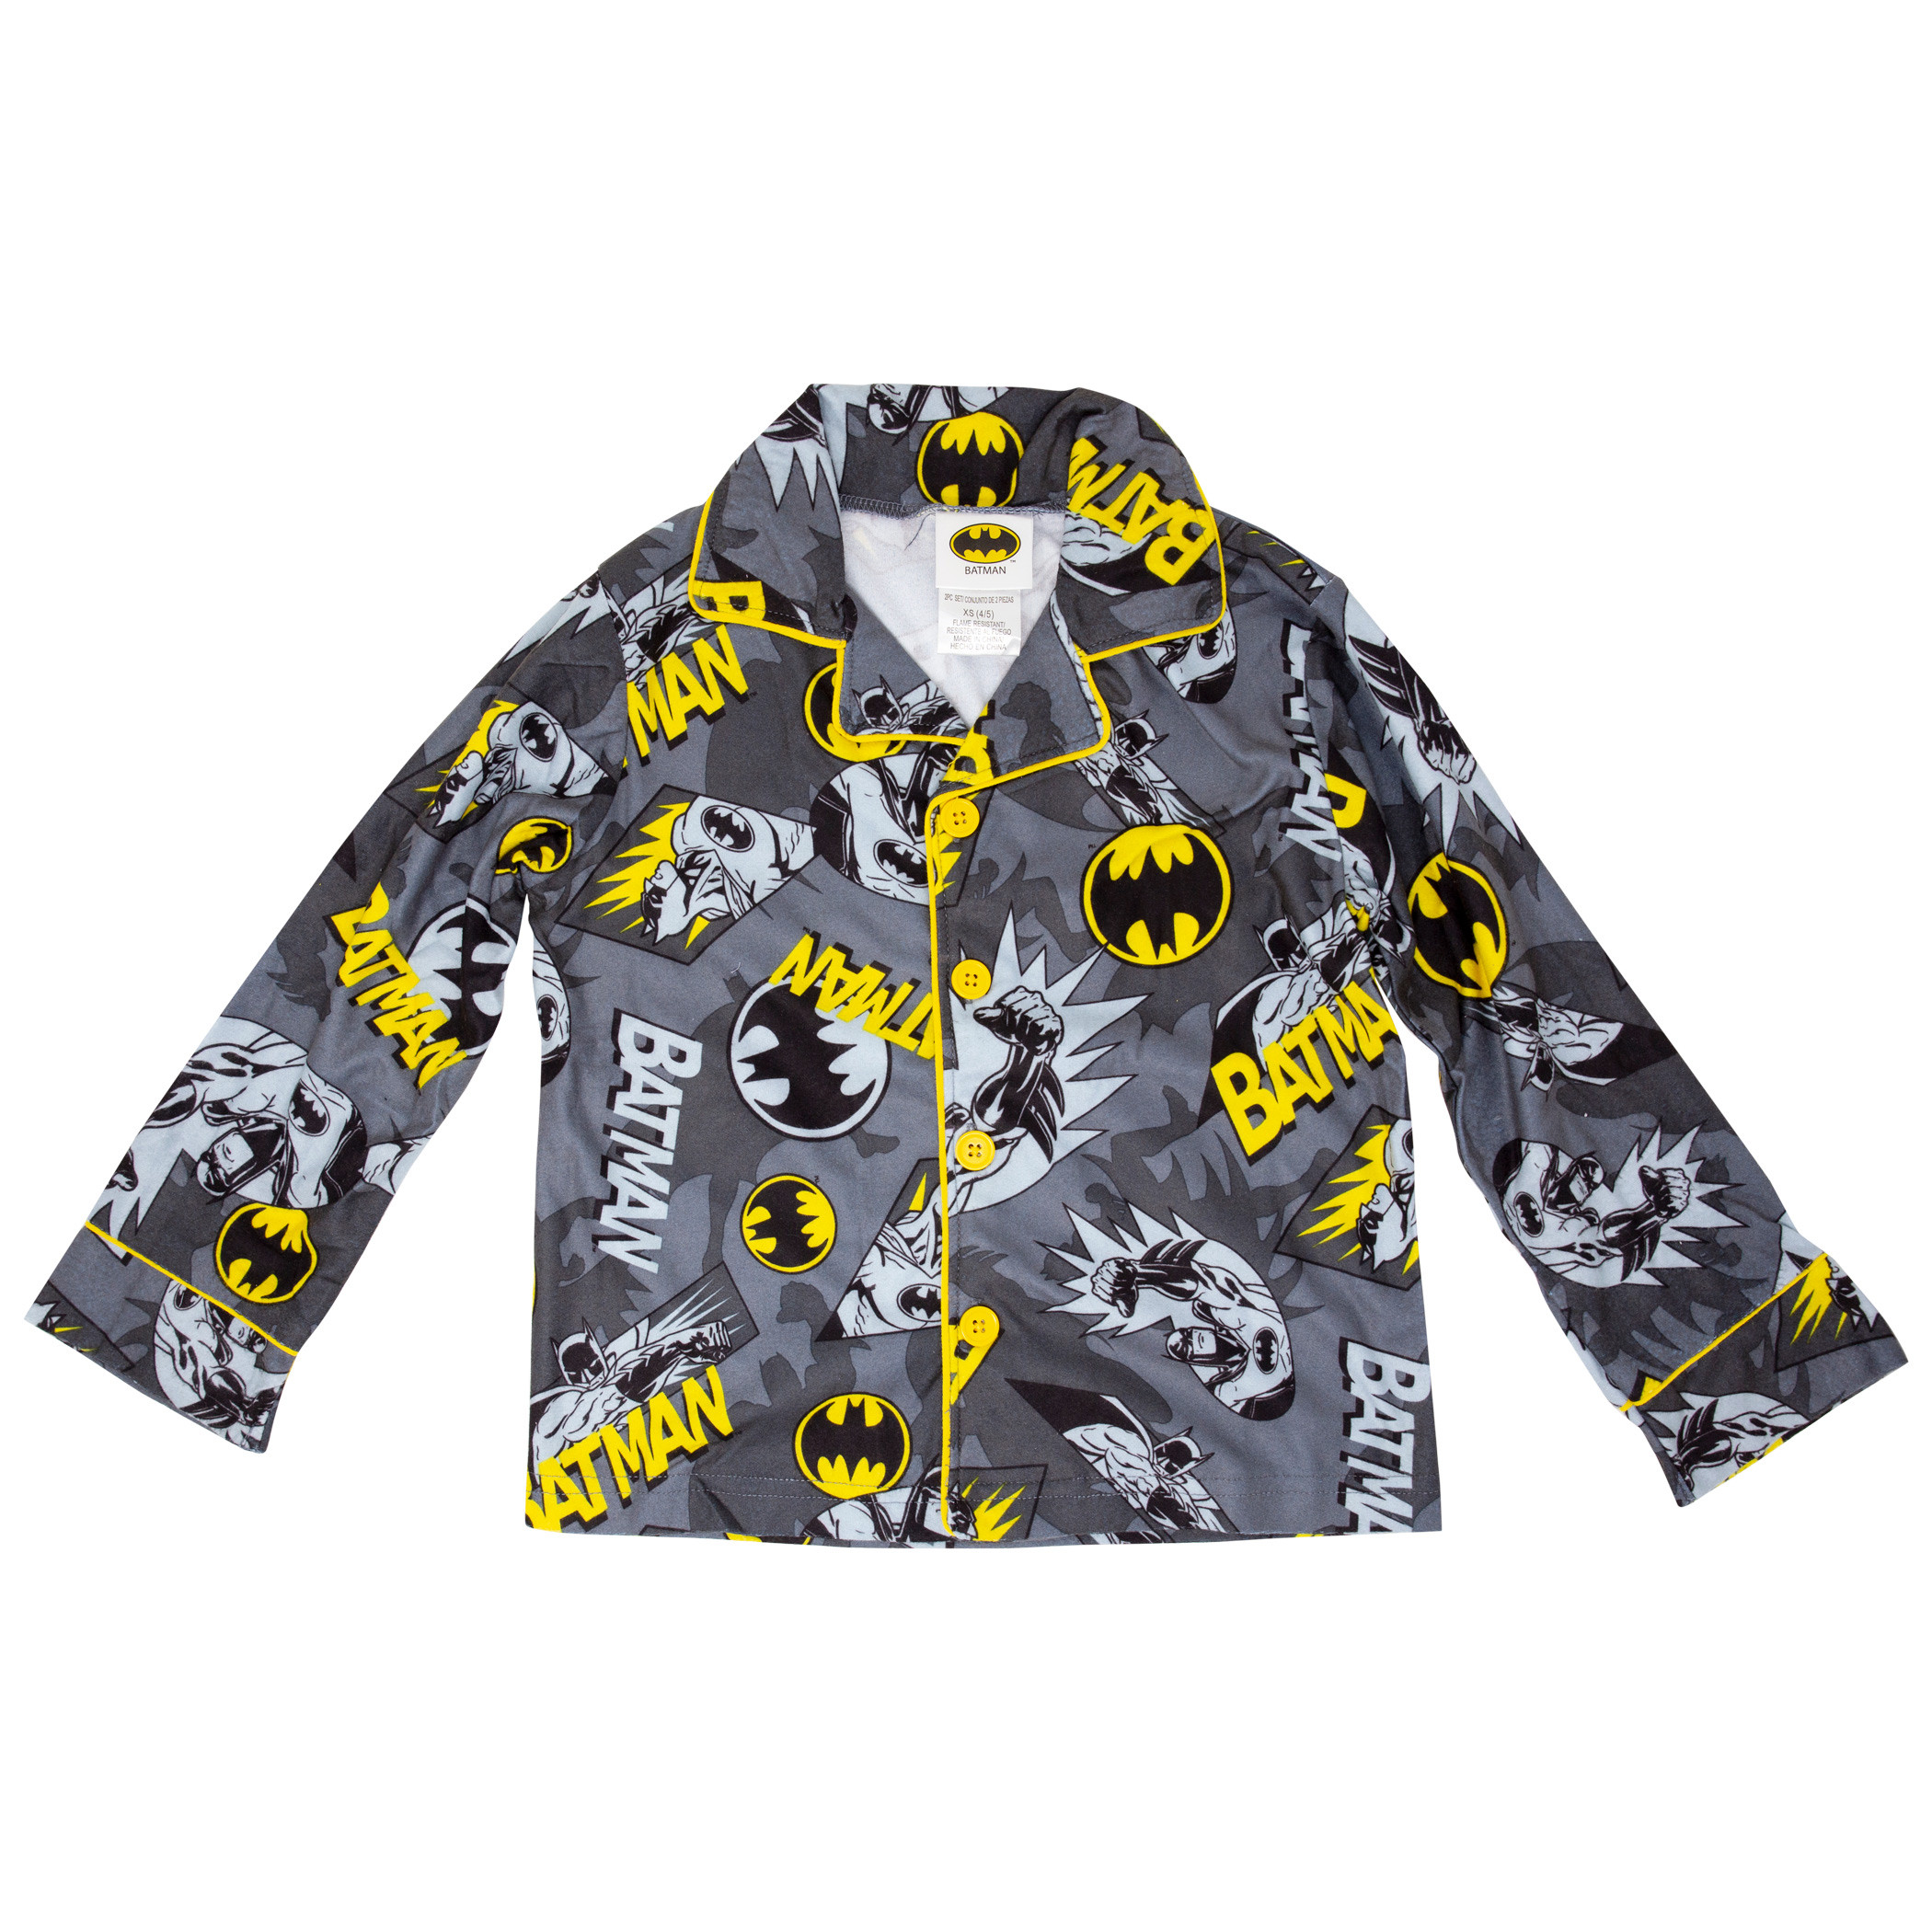 Batman All Over Print Kids Pajama Set